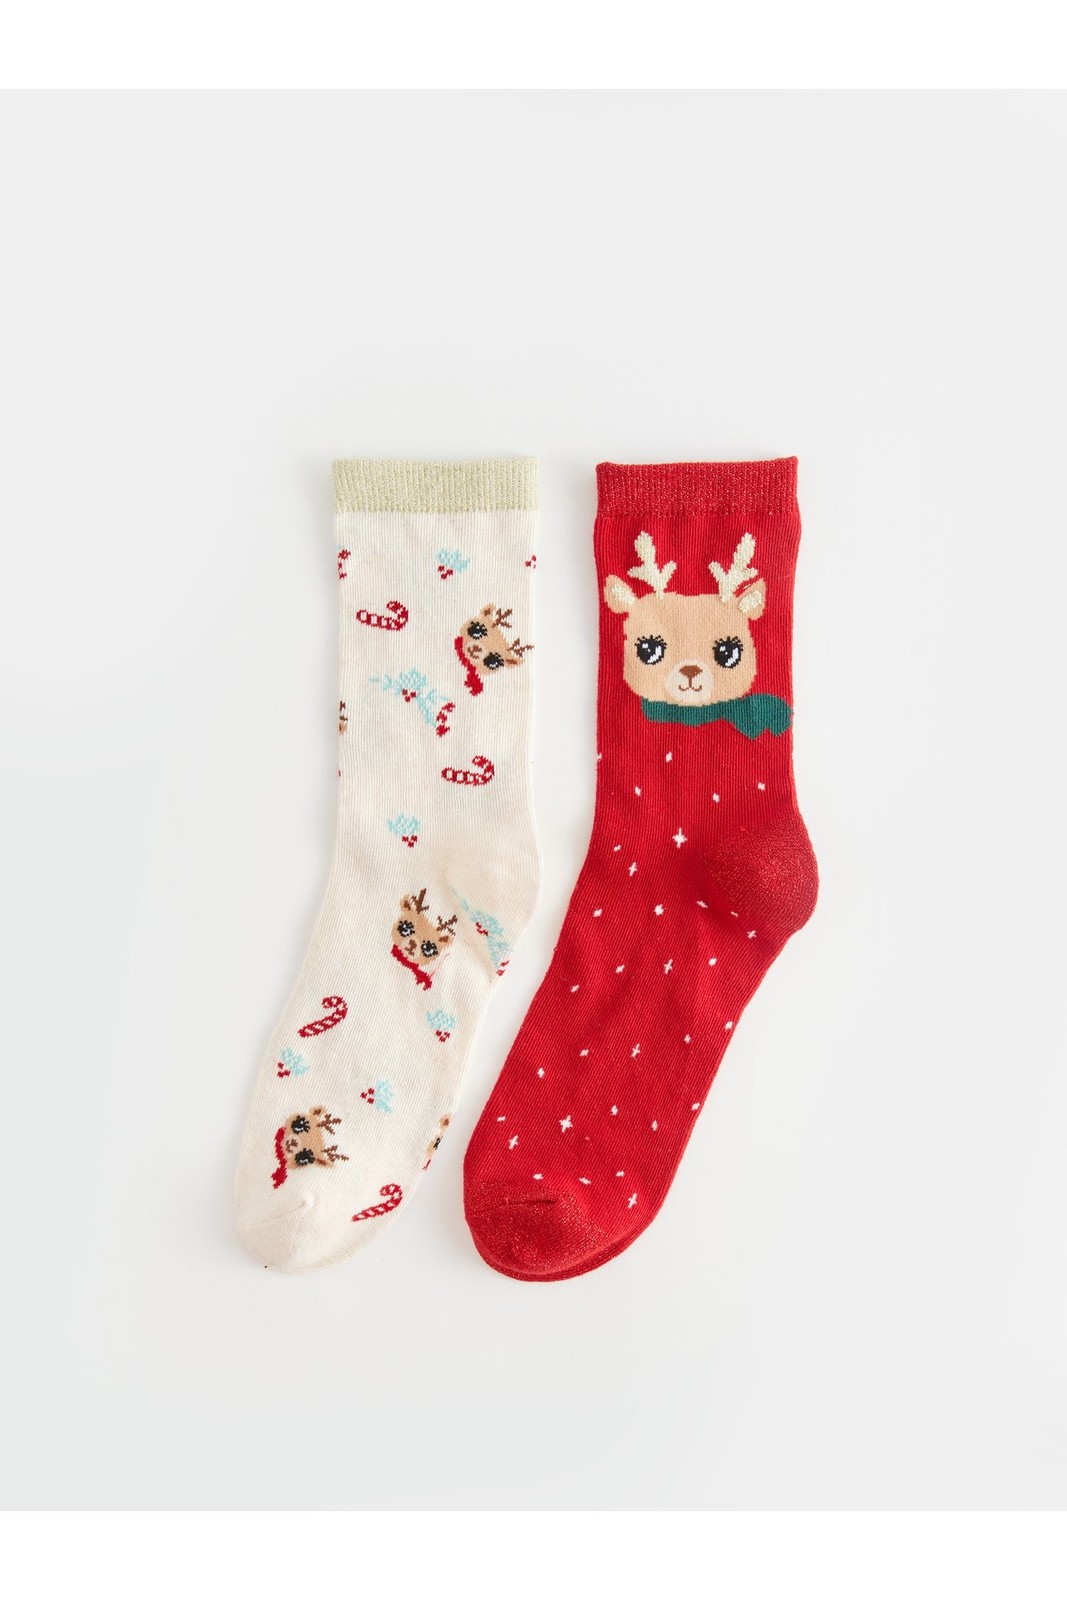 LC Waikiki 2-Piece Christmas Themed Girls' Crew Neck Socks